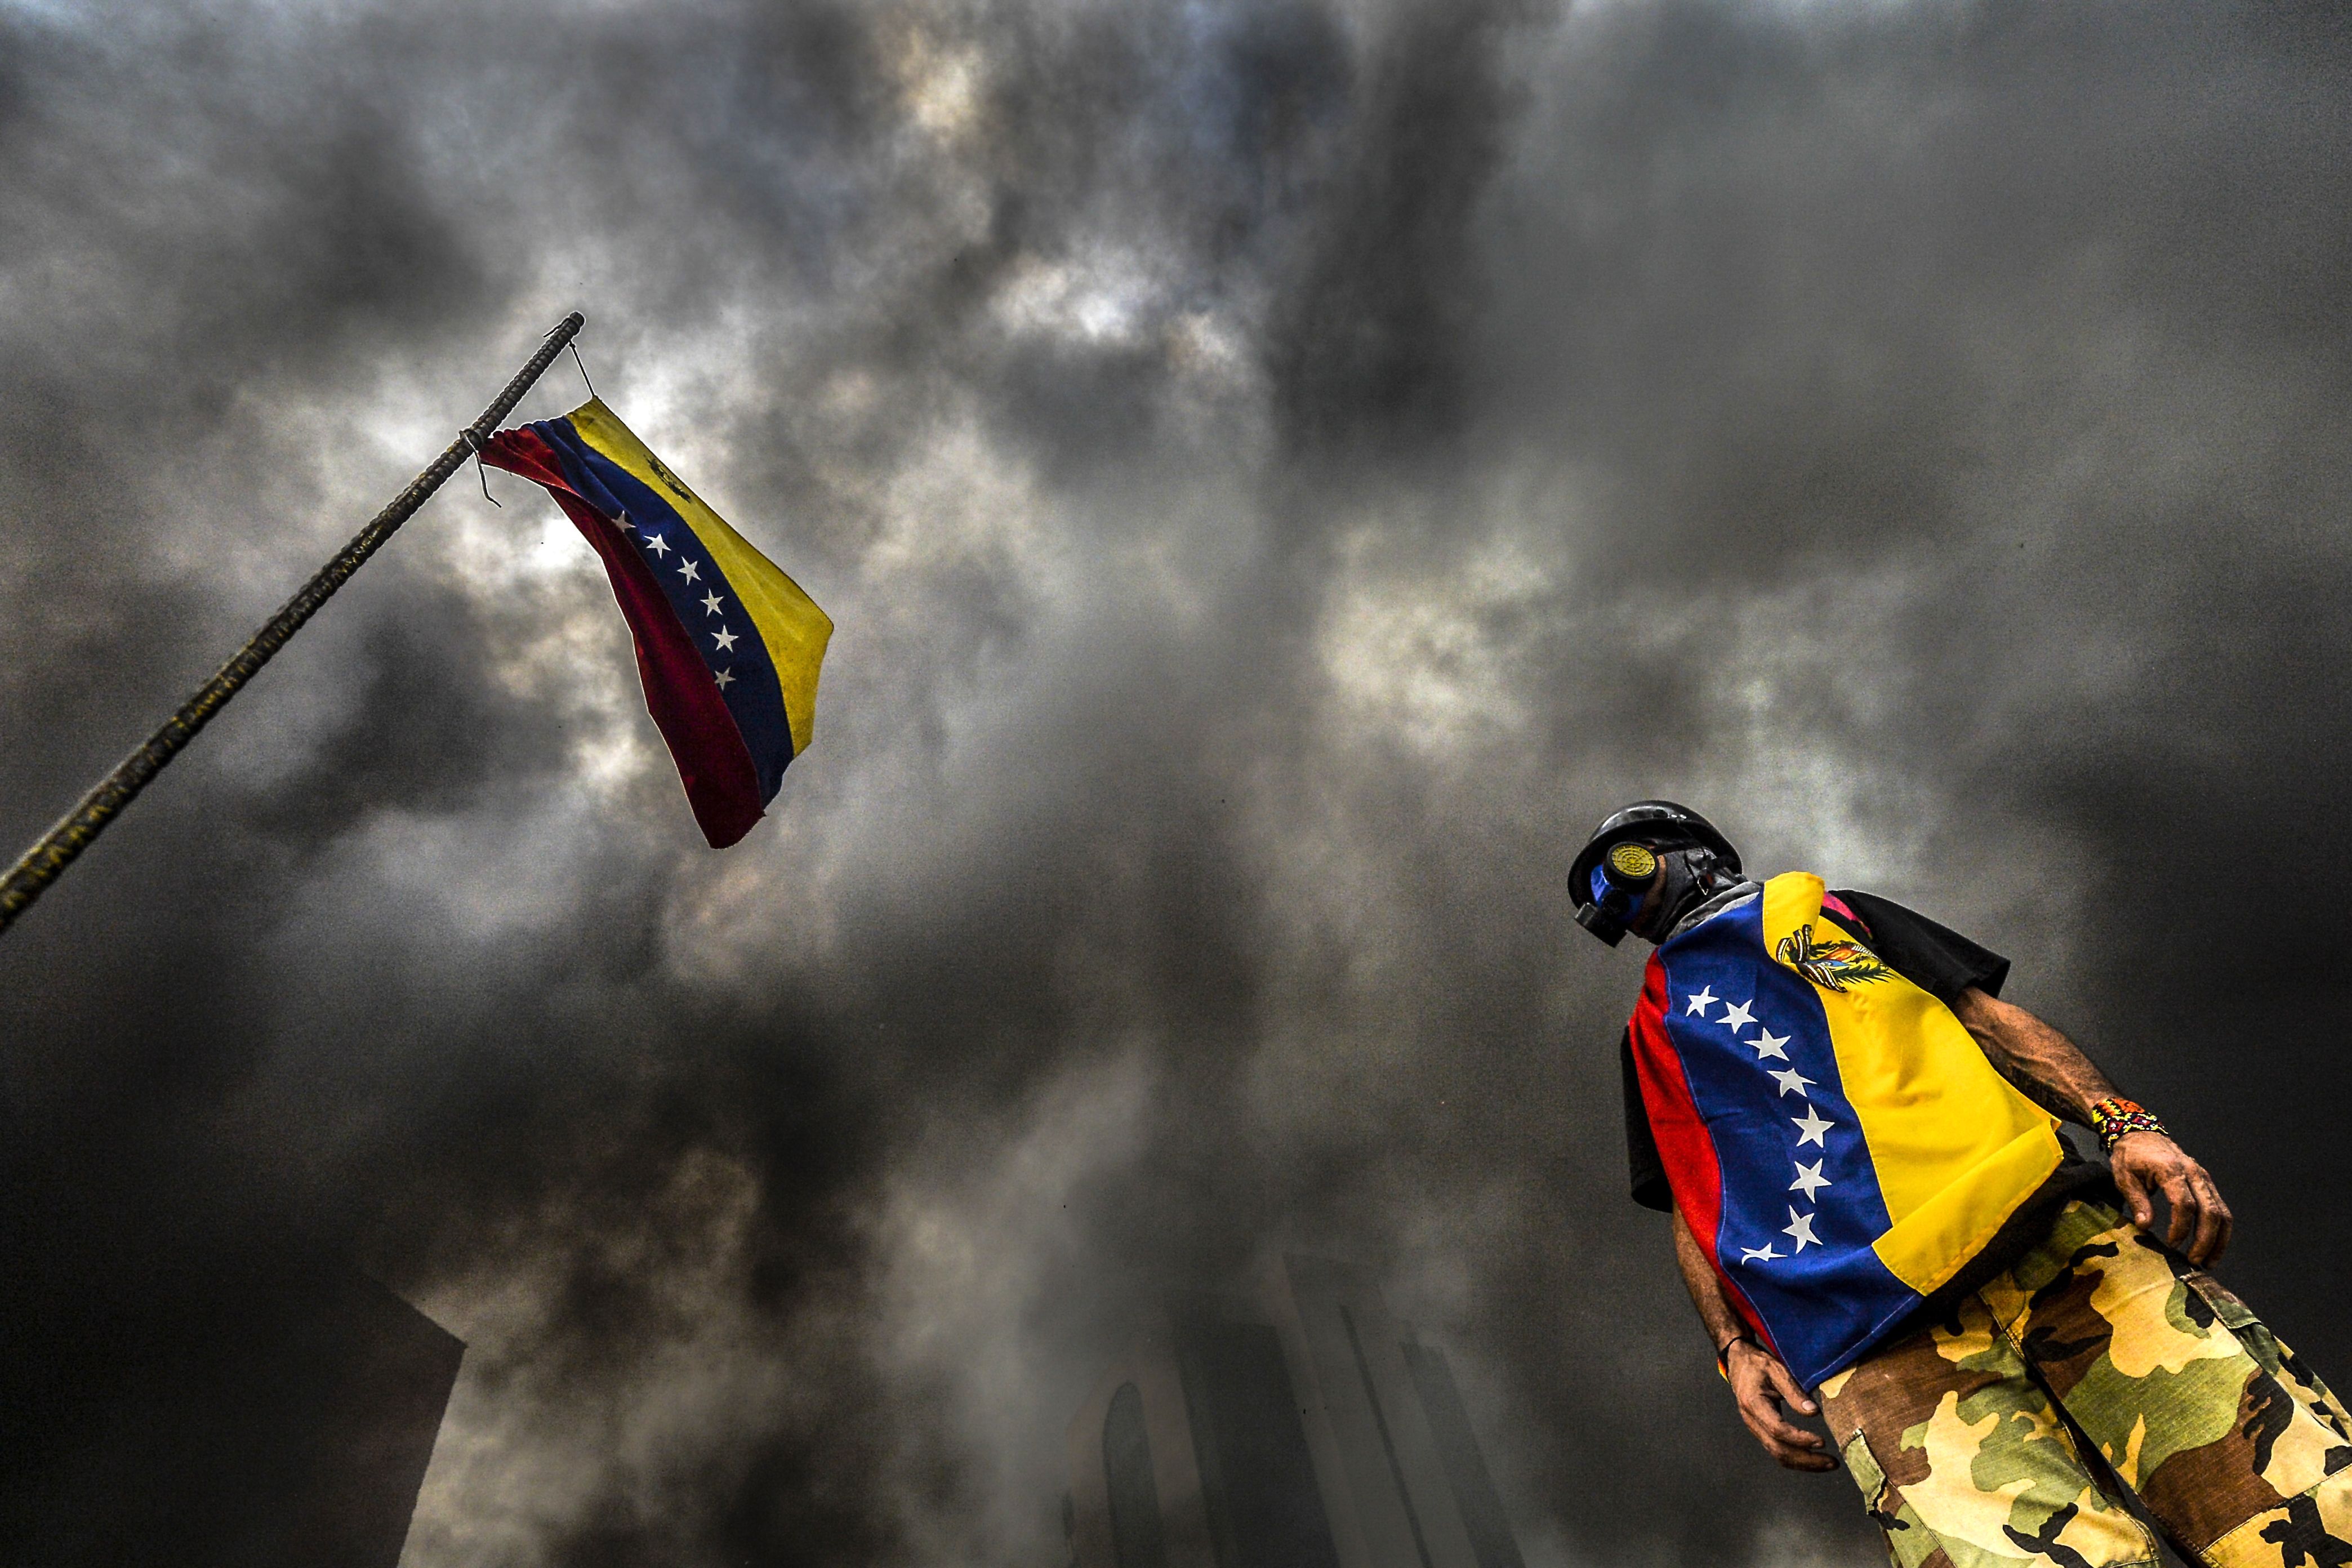 ¡Qué miedo! Vidente realizó espeluznante predicción sobre el futuro de Venezuela